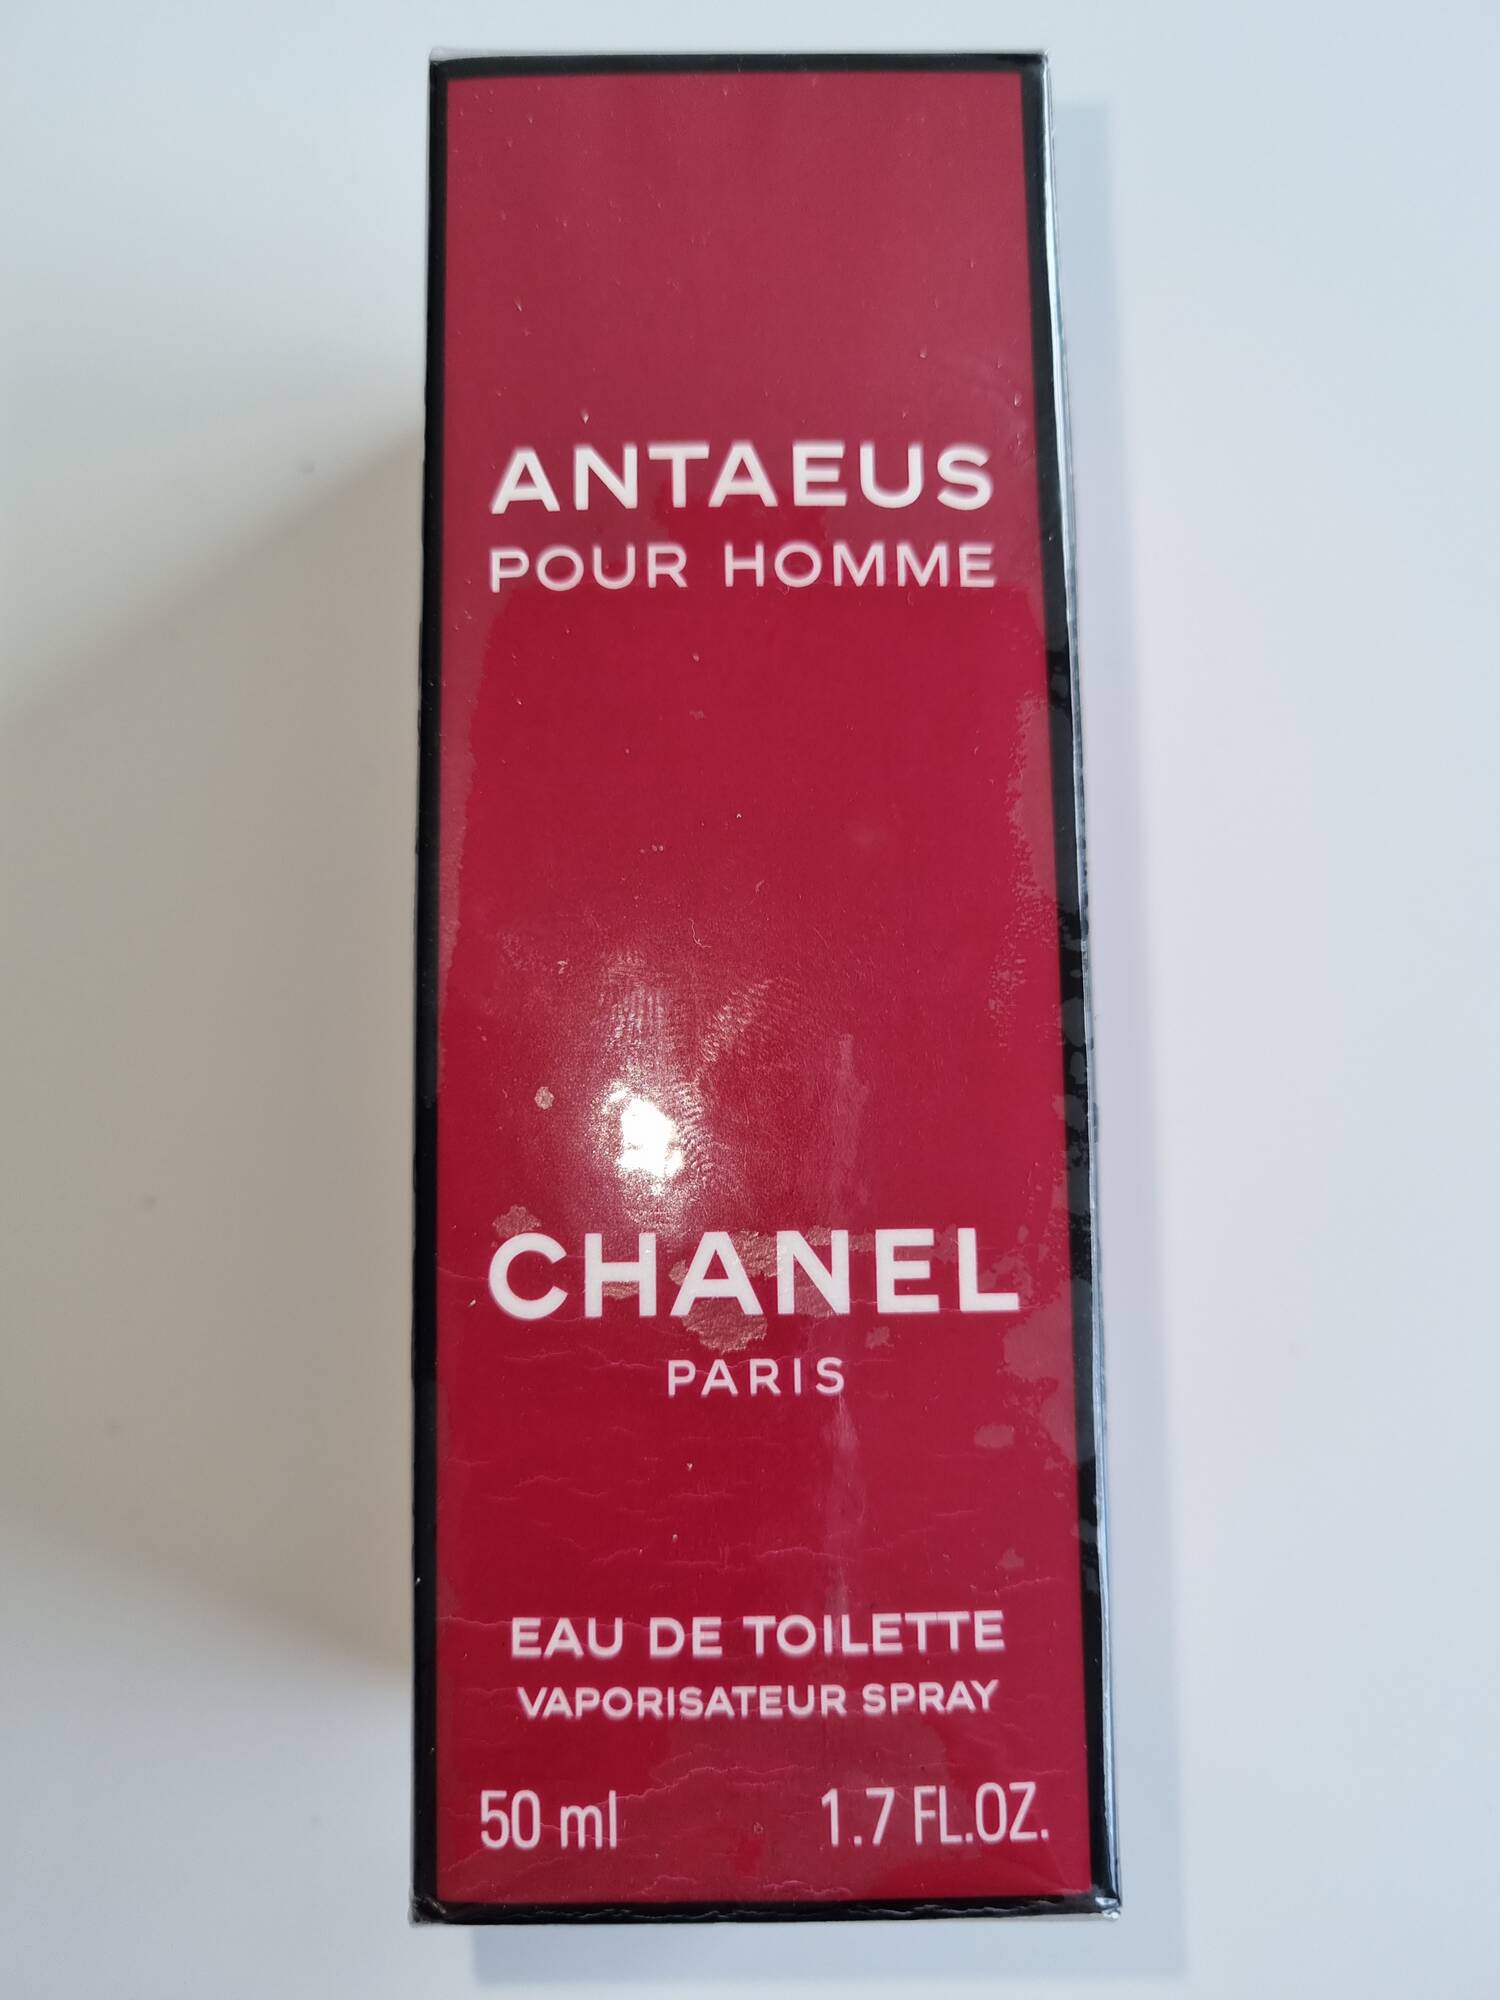 CHANEL - Antaeus pour homme - Eau de toilette